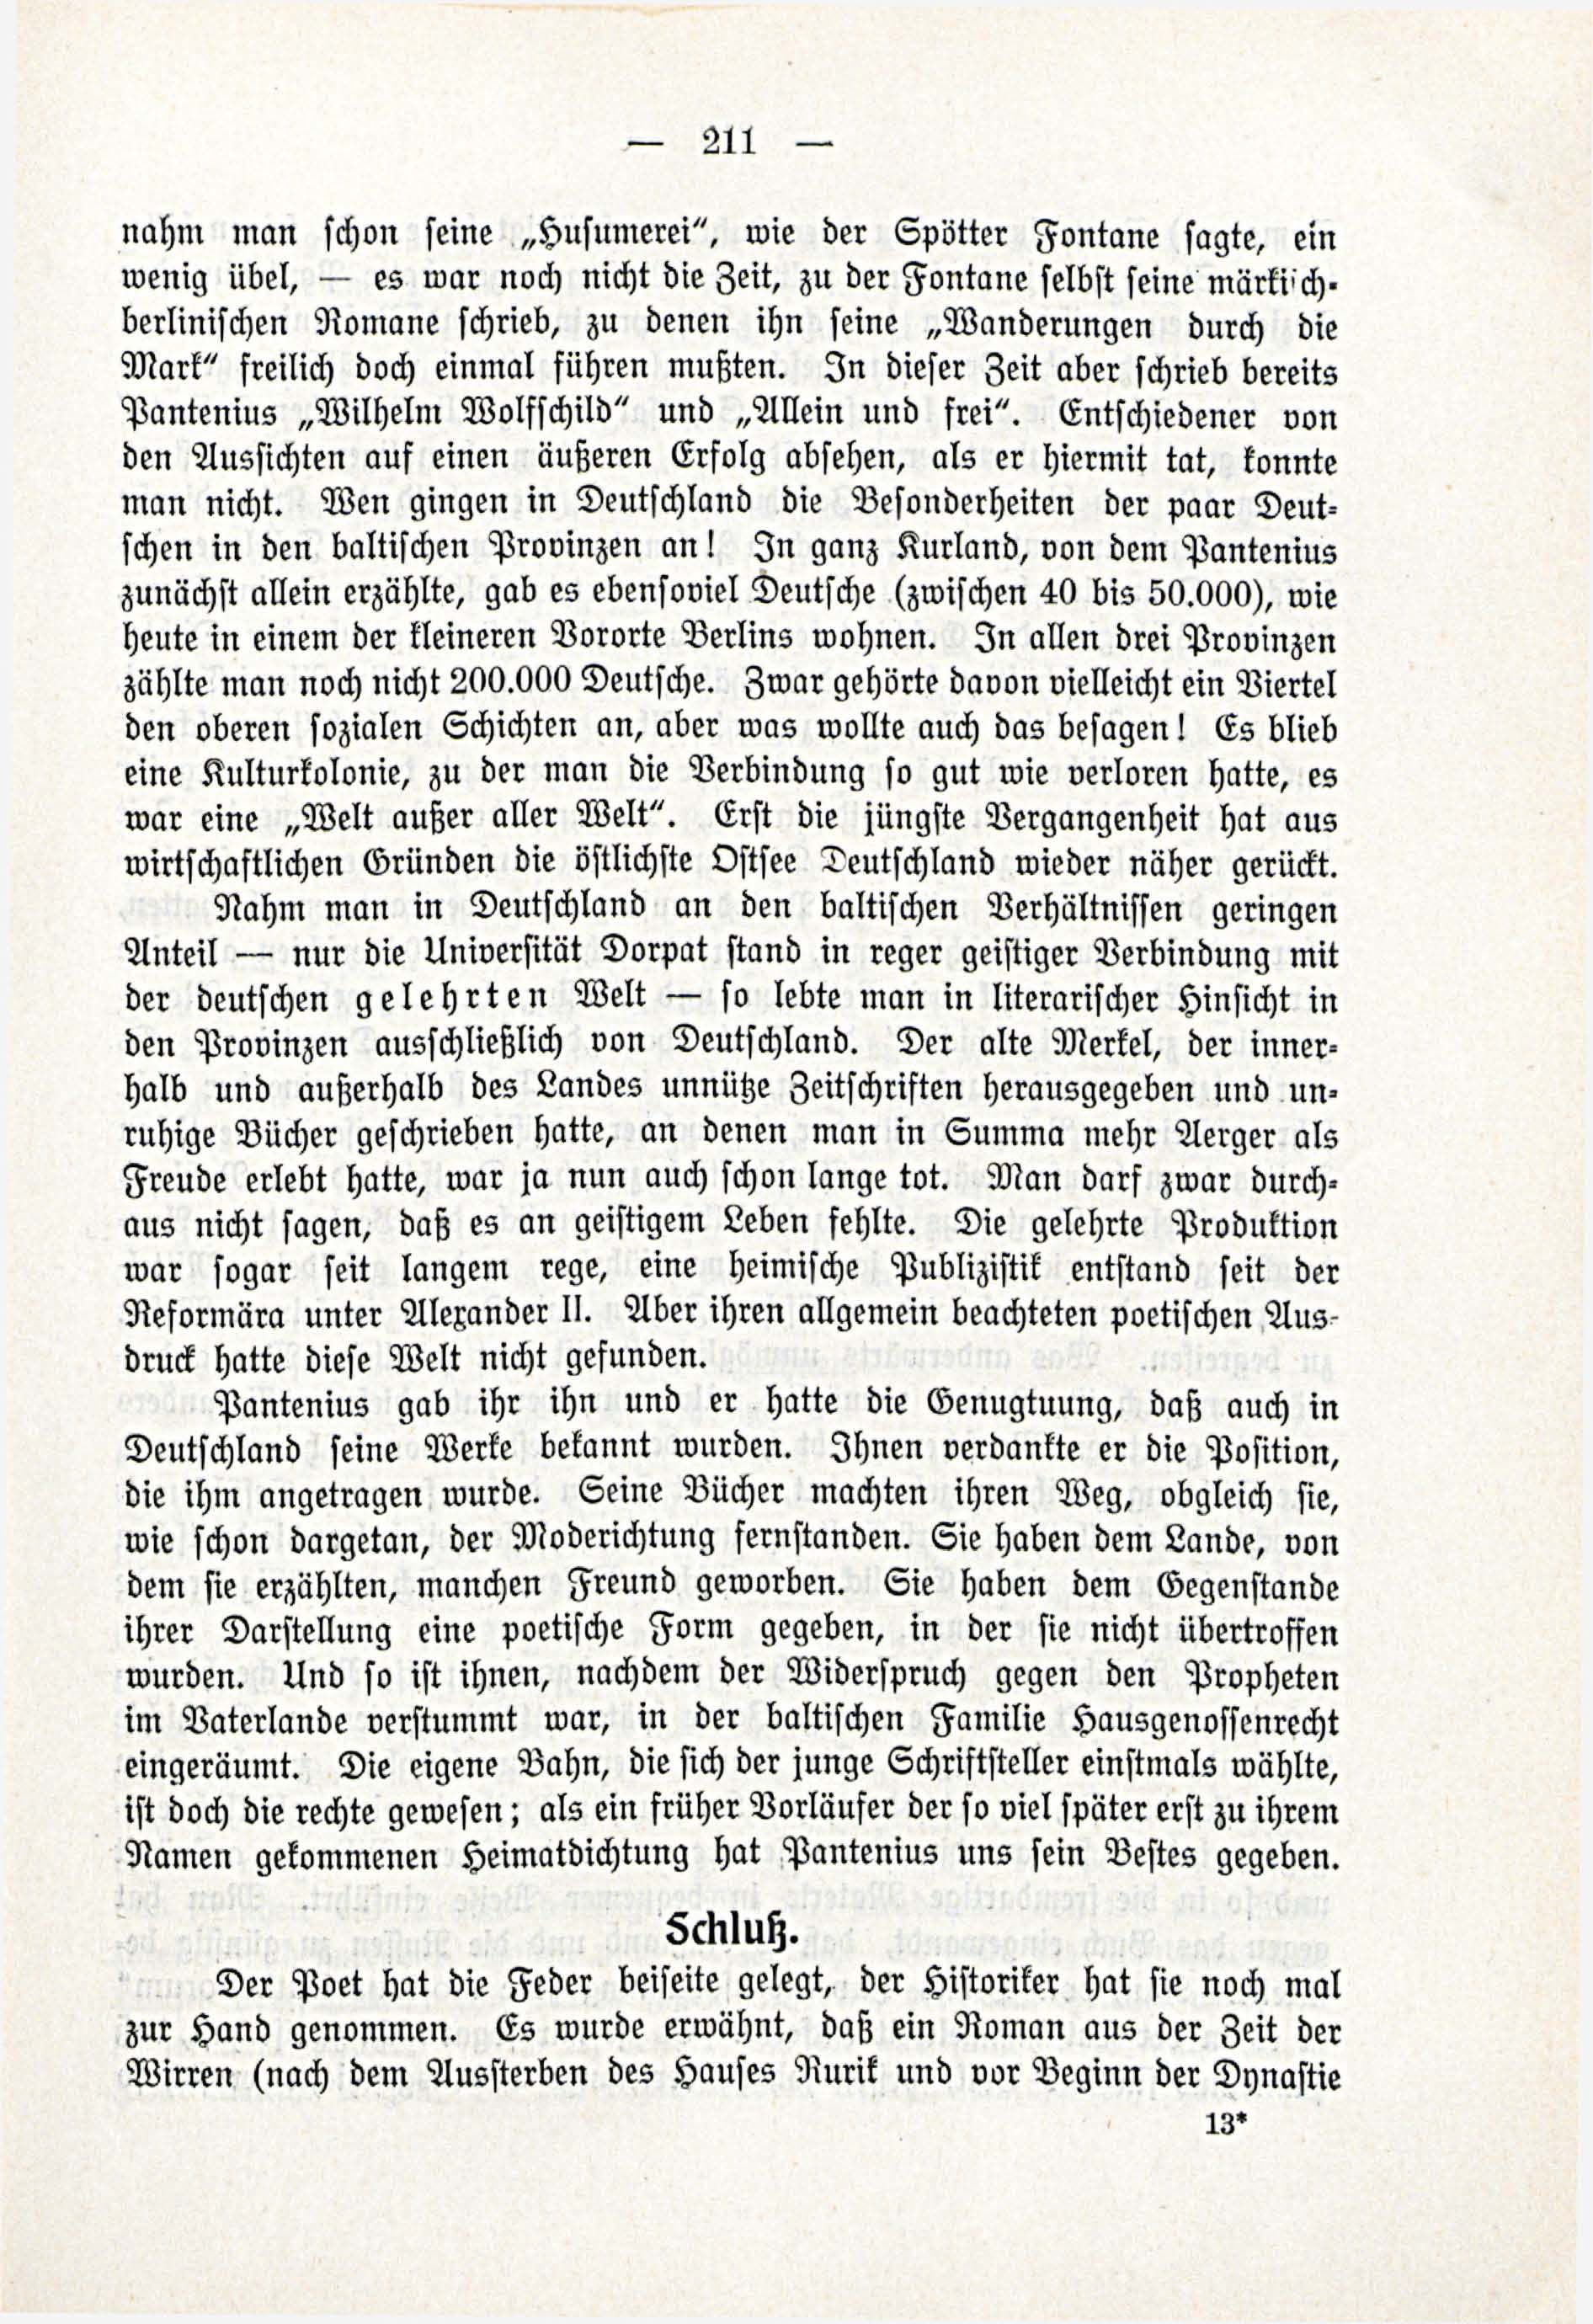 Deutsche Monatsschrift für Russland [3/03] (1914) | 57. (211) Haupttext